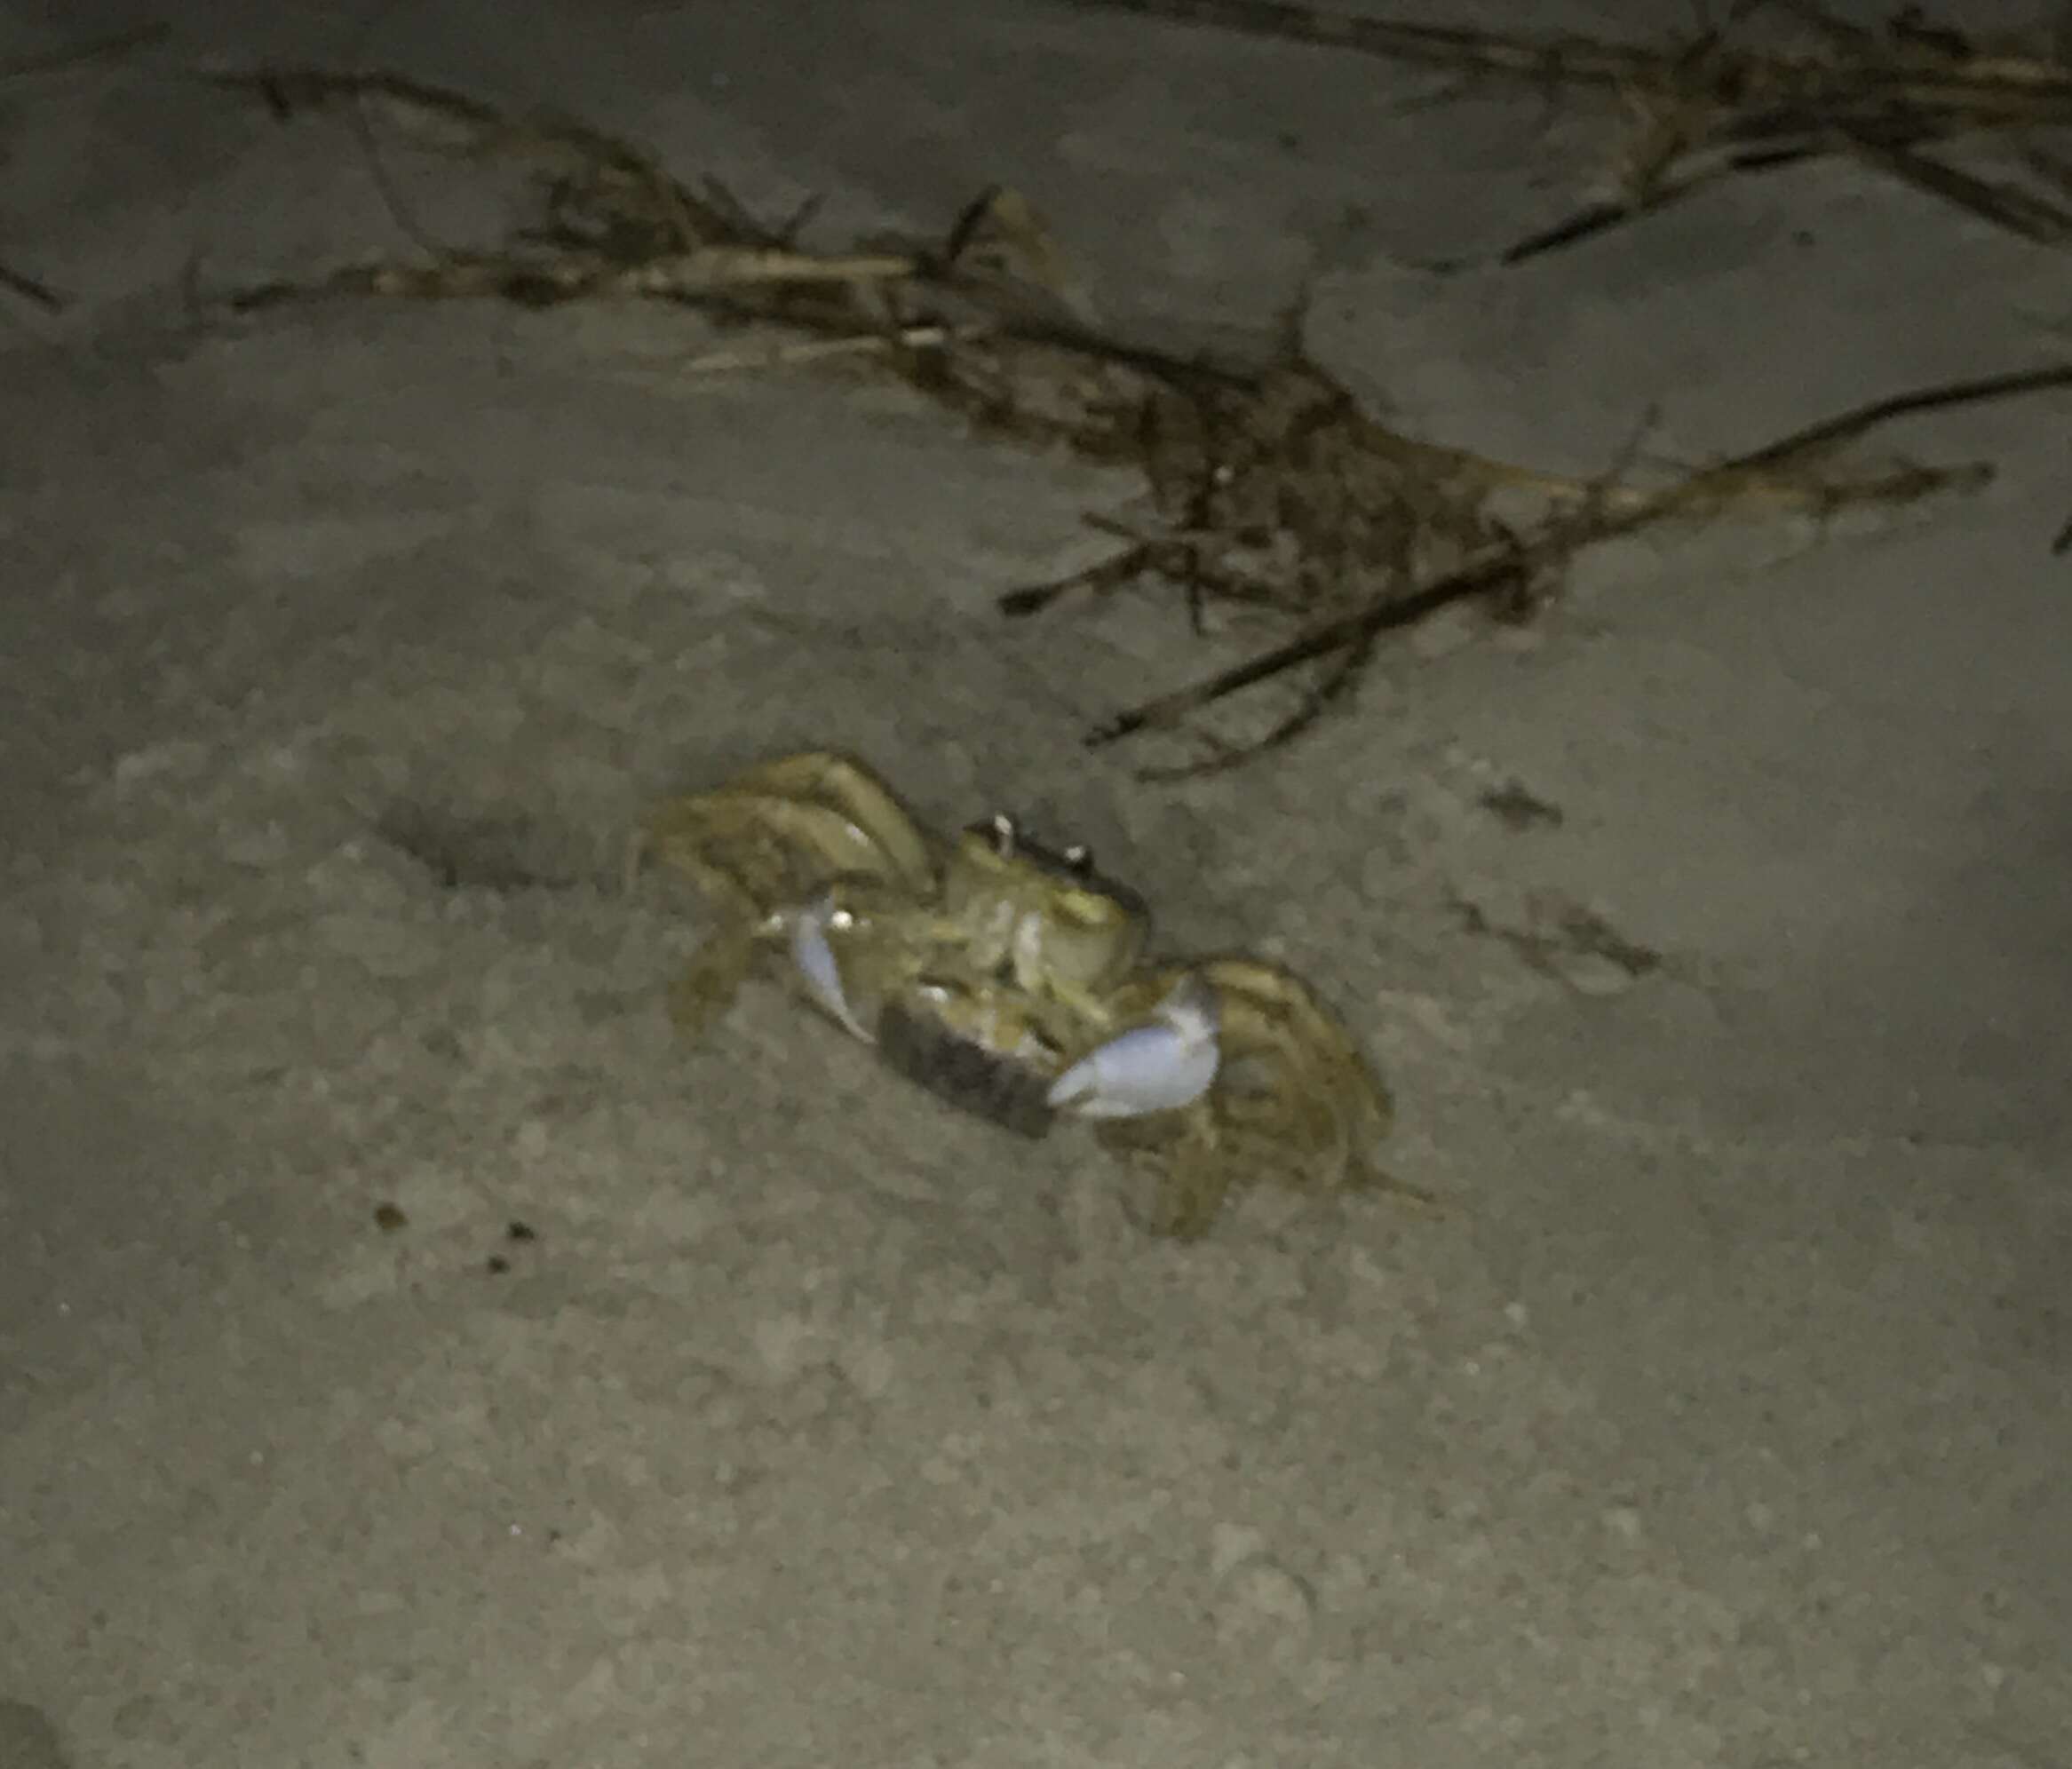 Image of Atlantic Ghost Crab